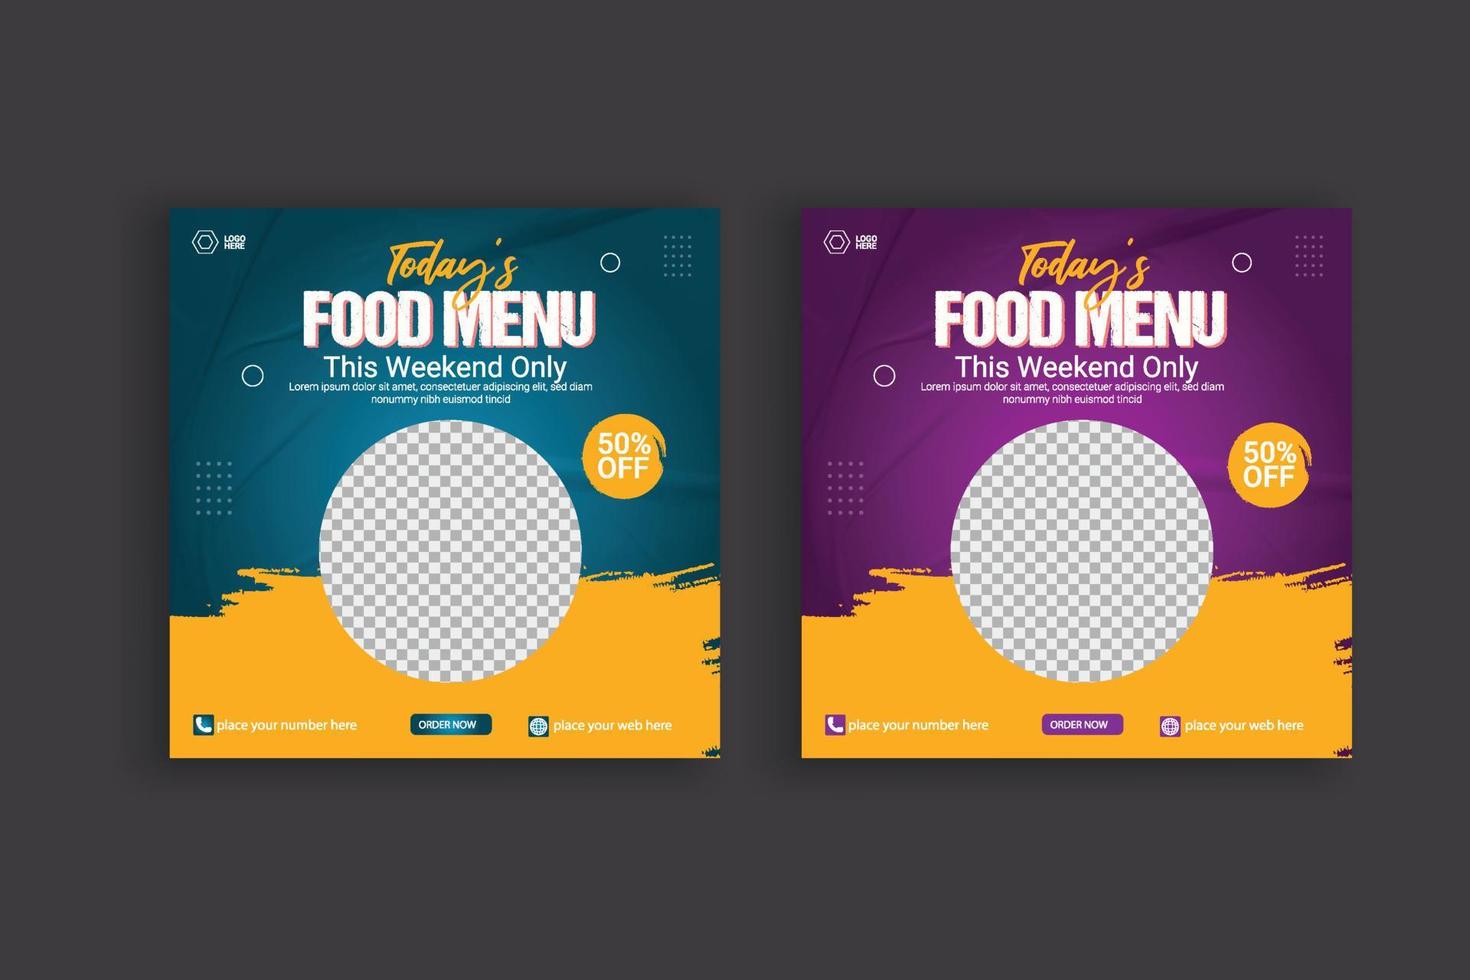 cibo sociale media inviare modello per cibo promozione semplice bandiera design vettore